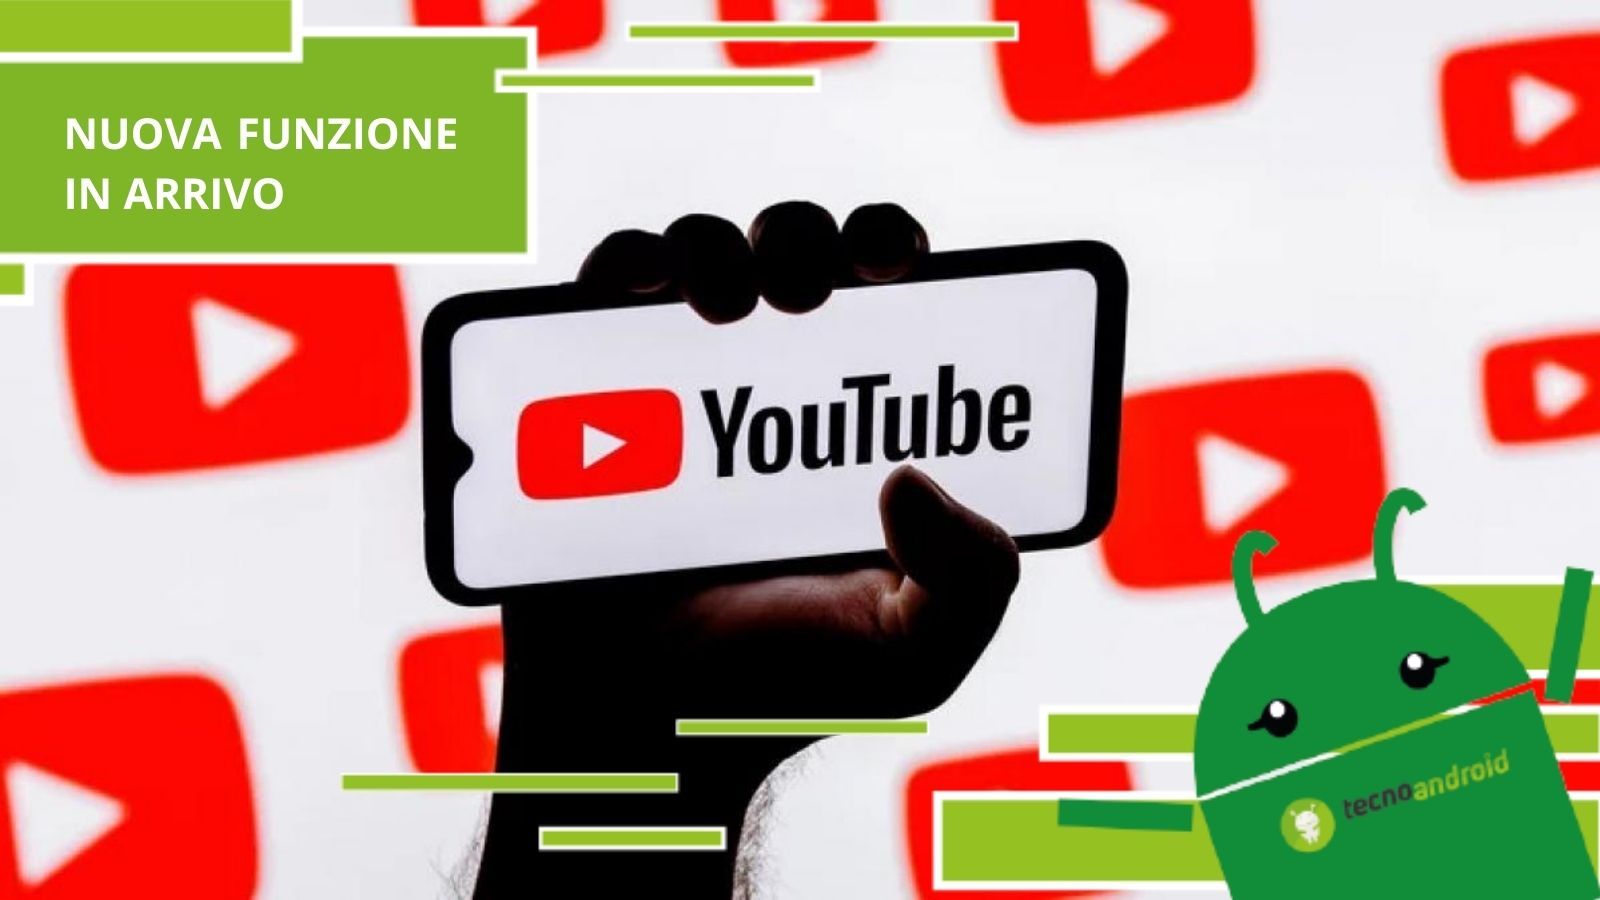 YouTube, la piattaforma sta per trasformarsi in Shazam e sarà in grado di riconoscere i brani